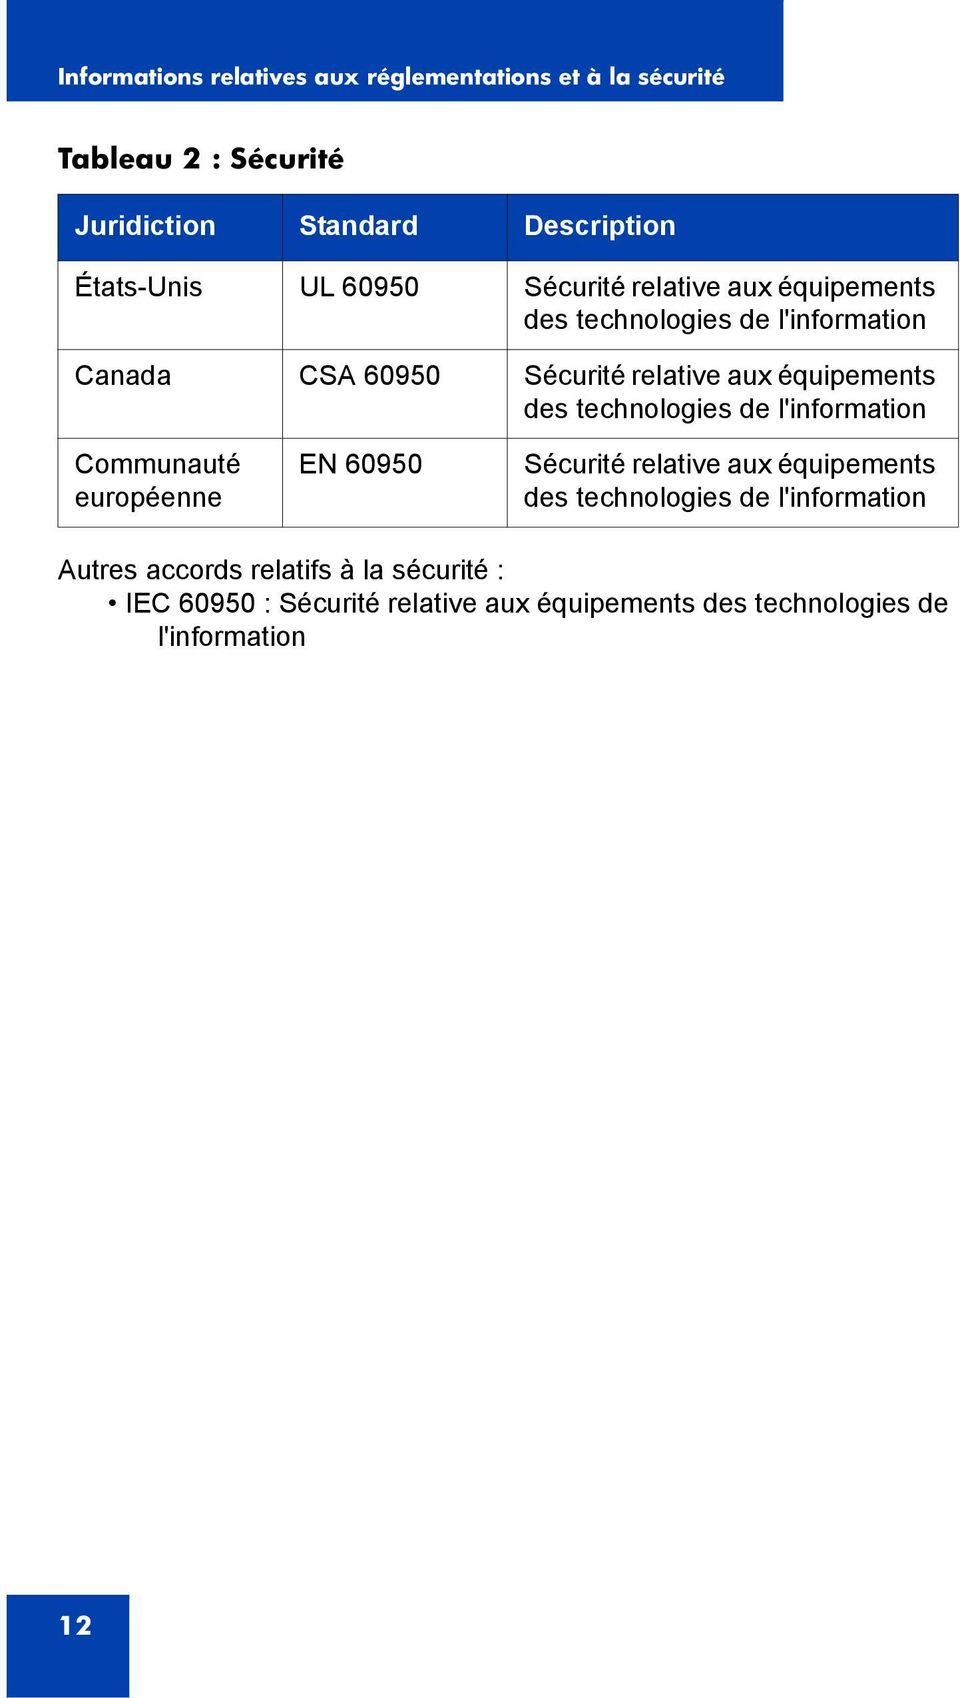 équipements des technologies de l'information Communauté européenne EN 60950 Sécurité relative aux équipements des